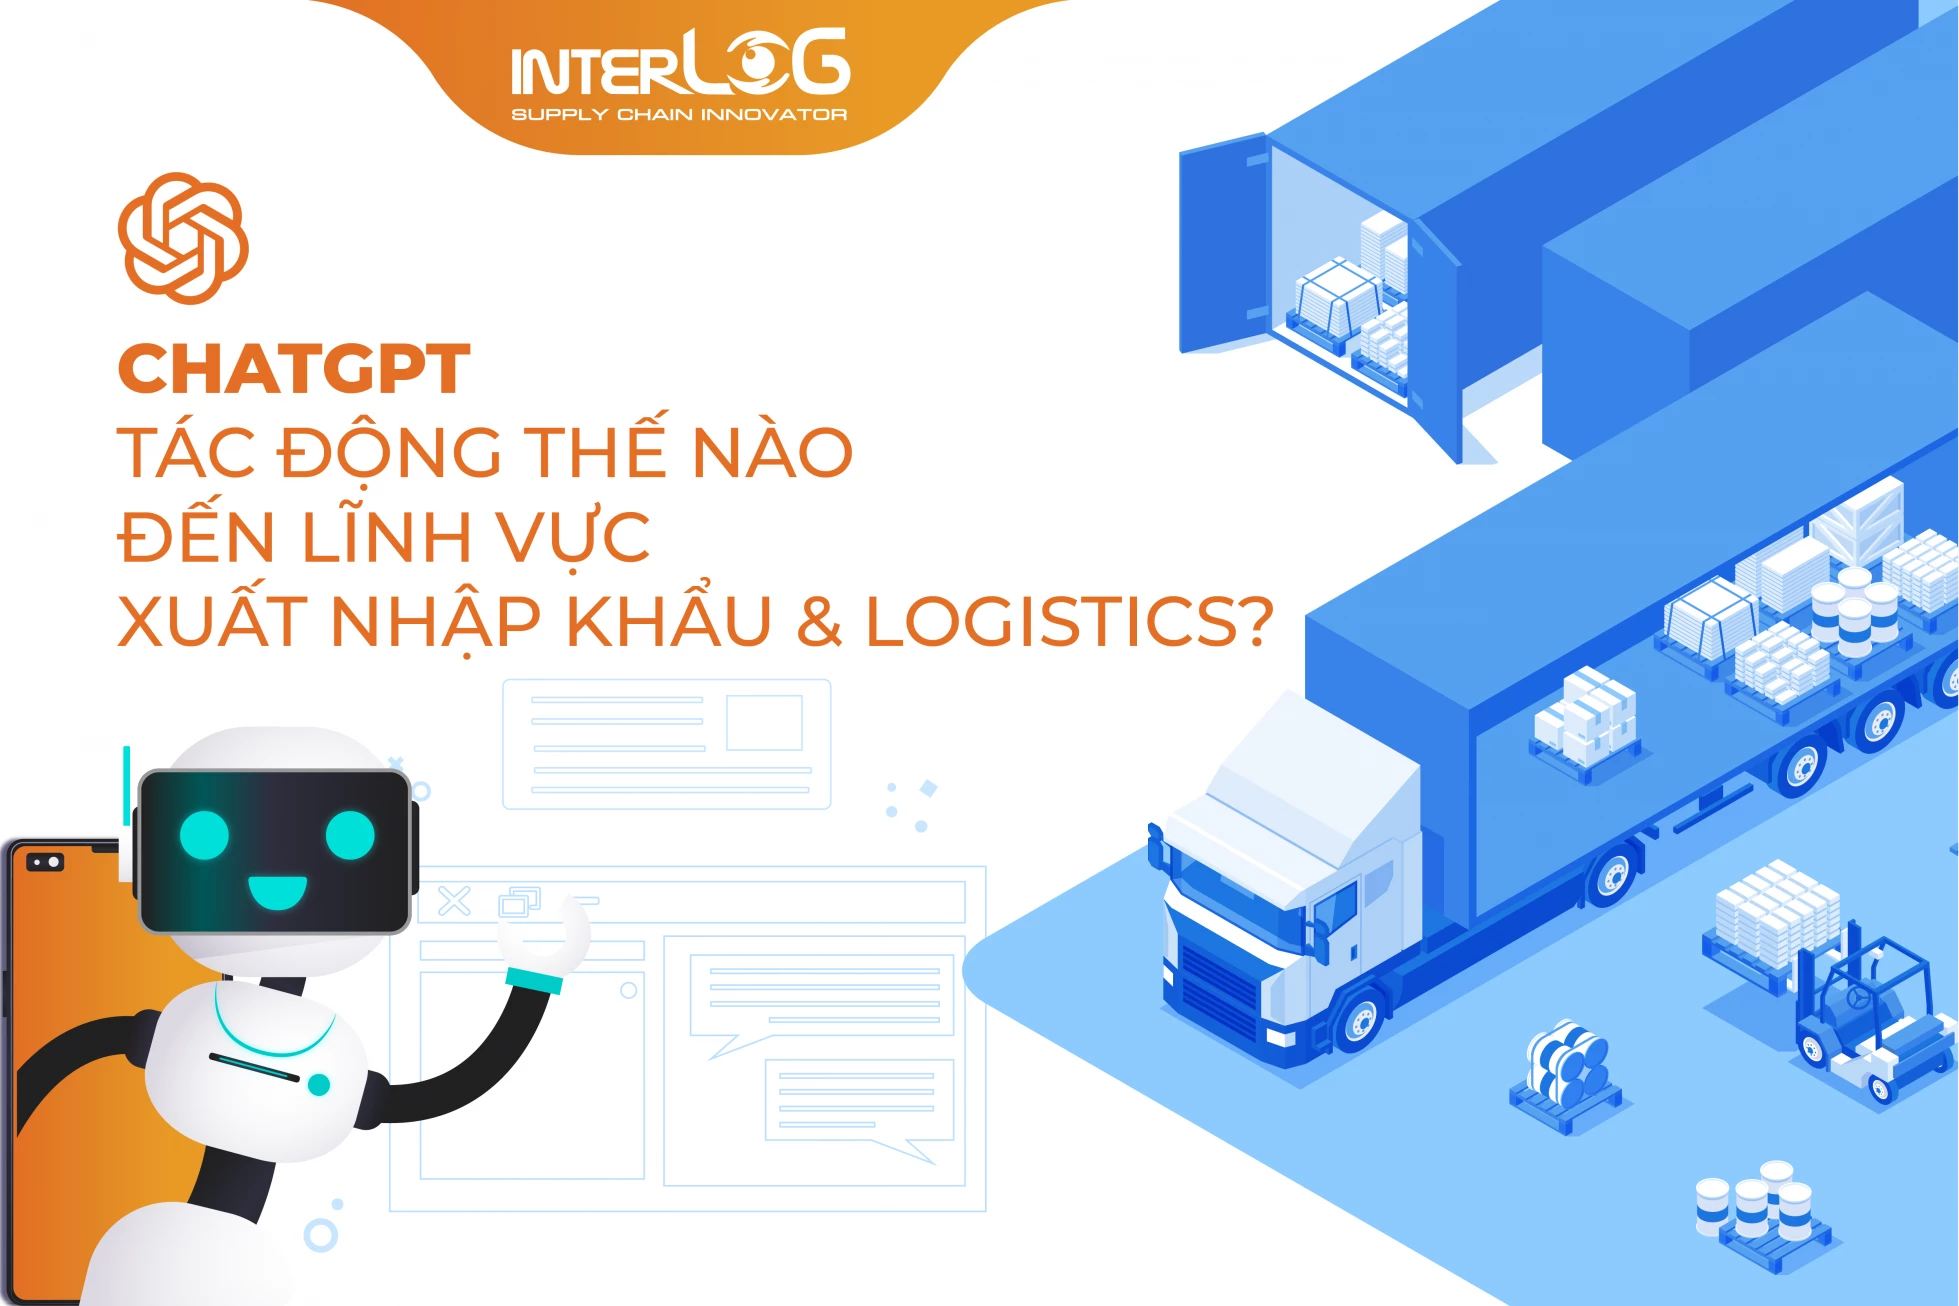 ChatGPT sẽ tác động ra sao tới lĩnh vực xuất nhập khẩu và logistics?